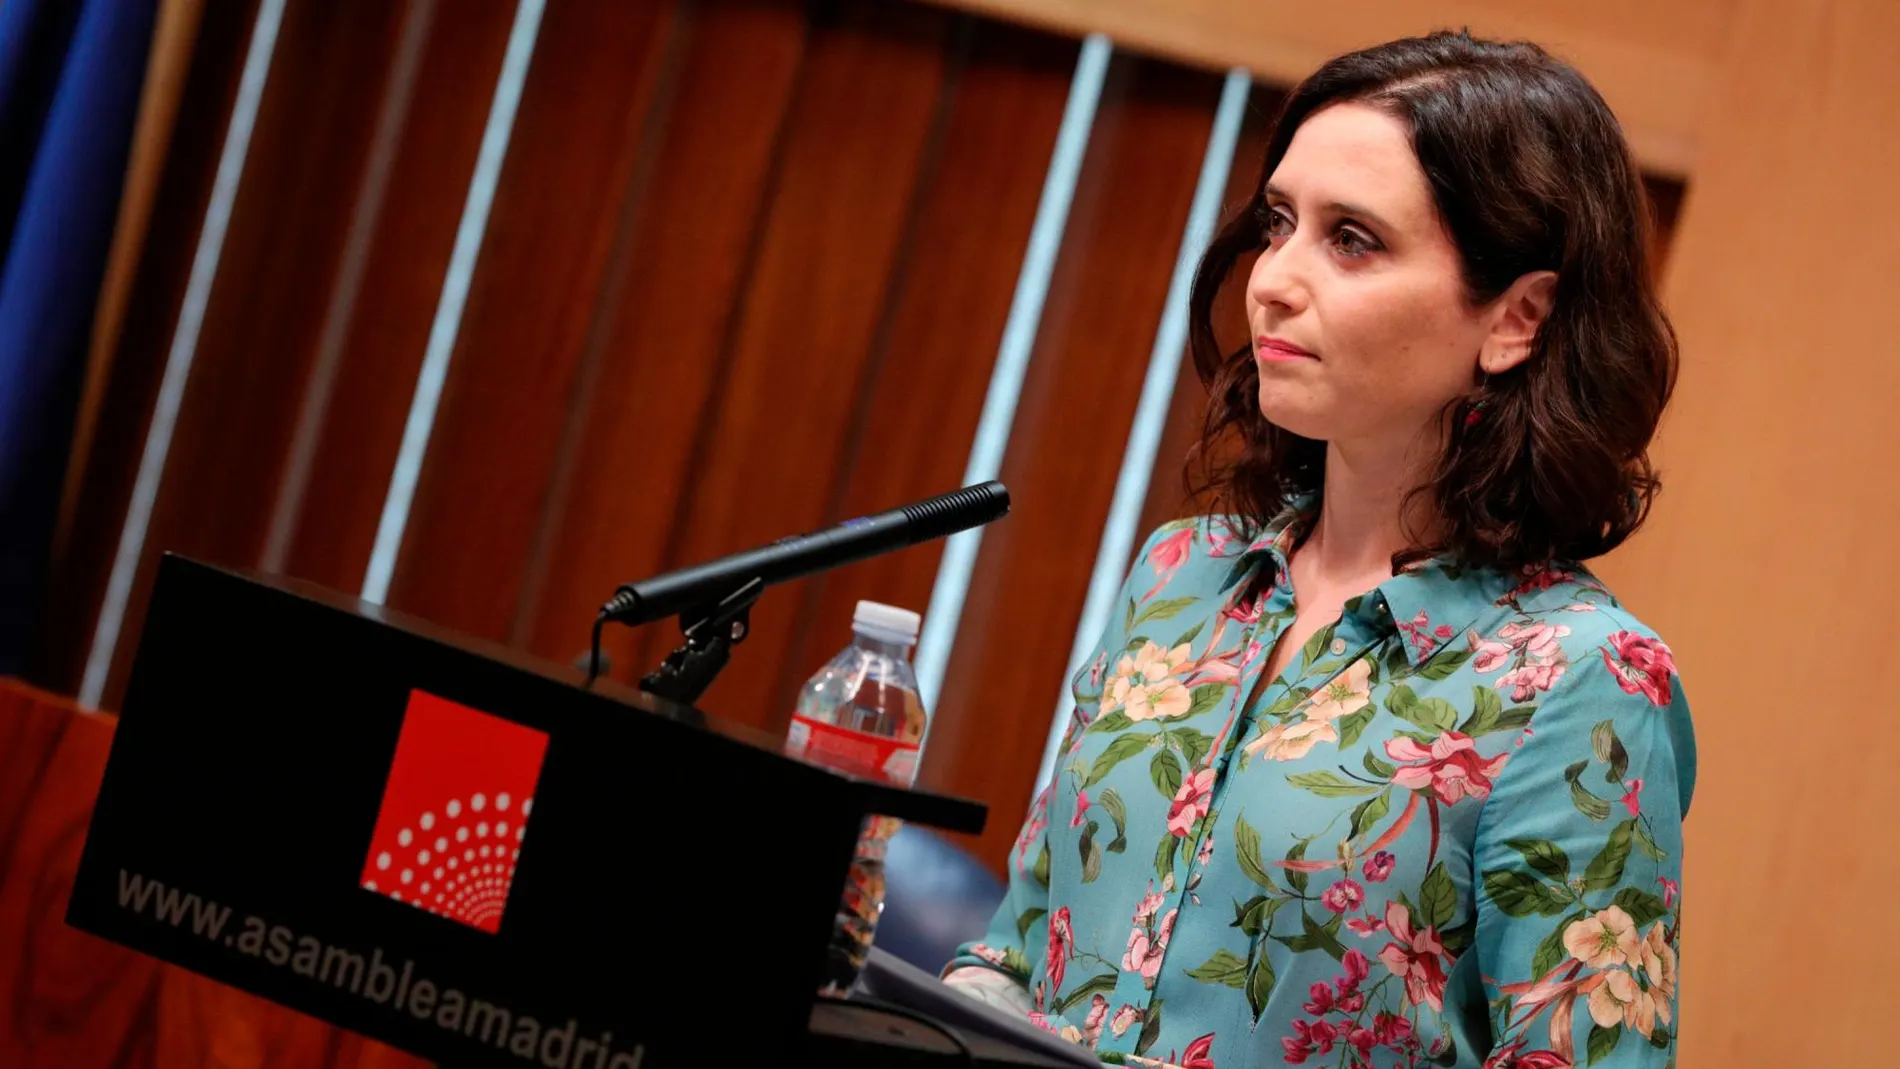 La candidata del PP a la Comunidad de Madrid, Isabel Díaz Ayuso